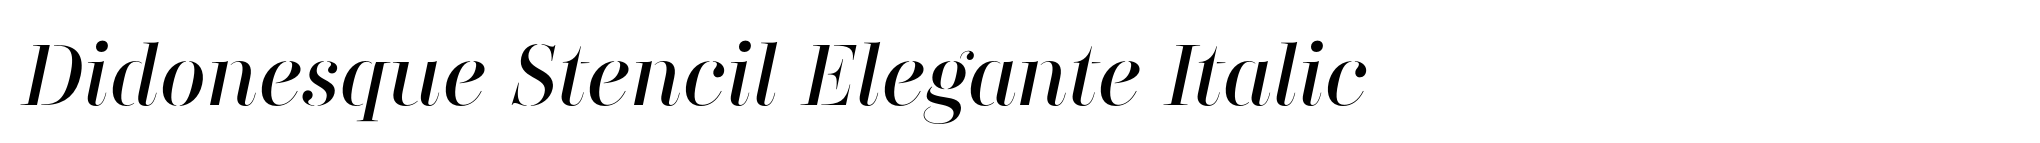 Didonesque Stencil Elegante Italic image